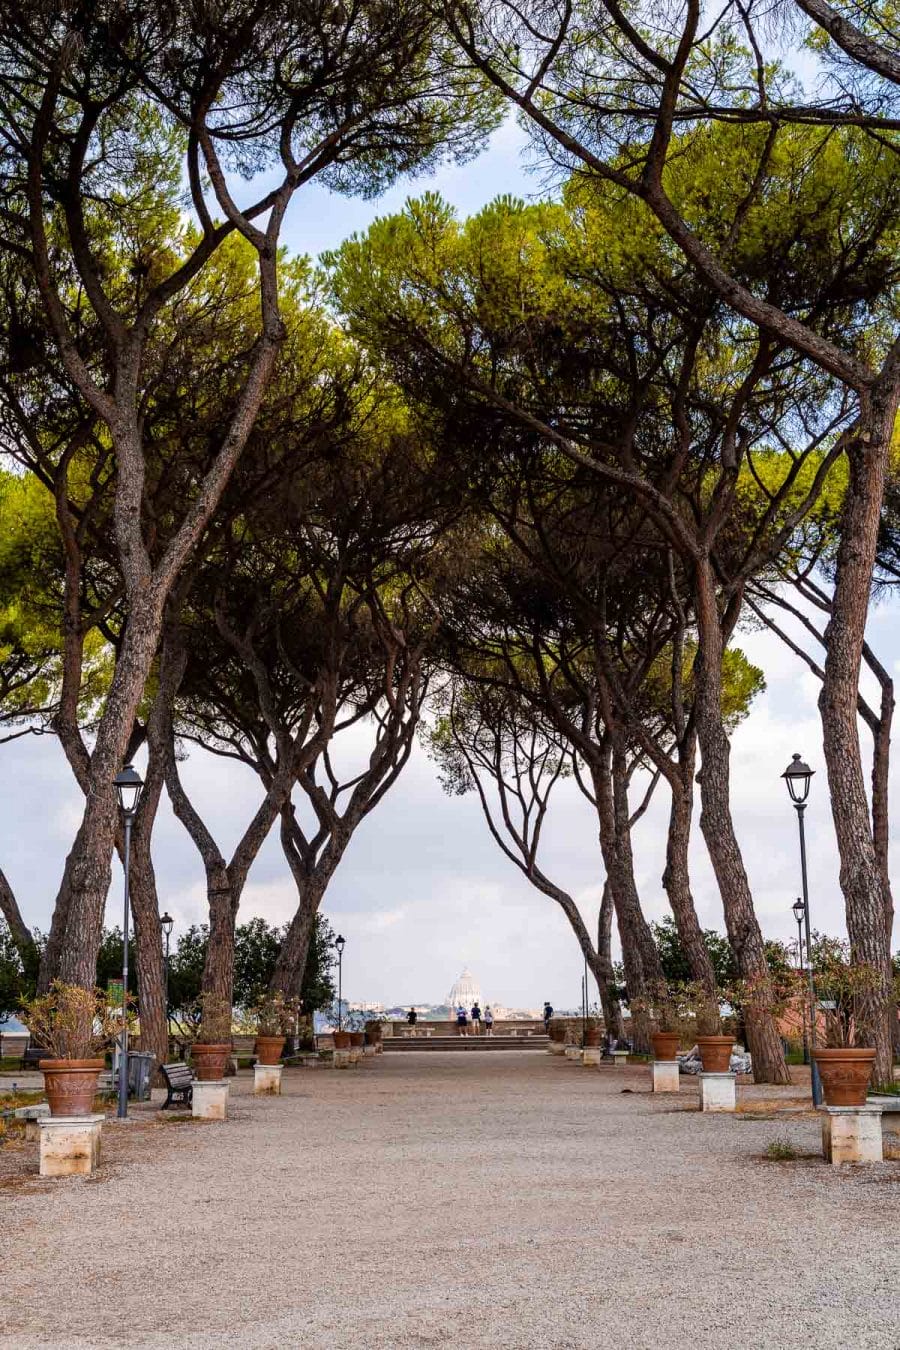 Giardino degli Aranci in Rome, Italy